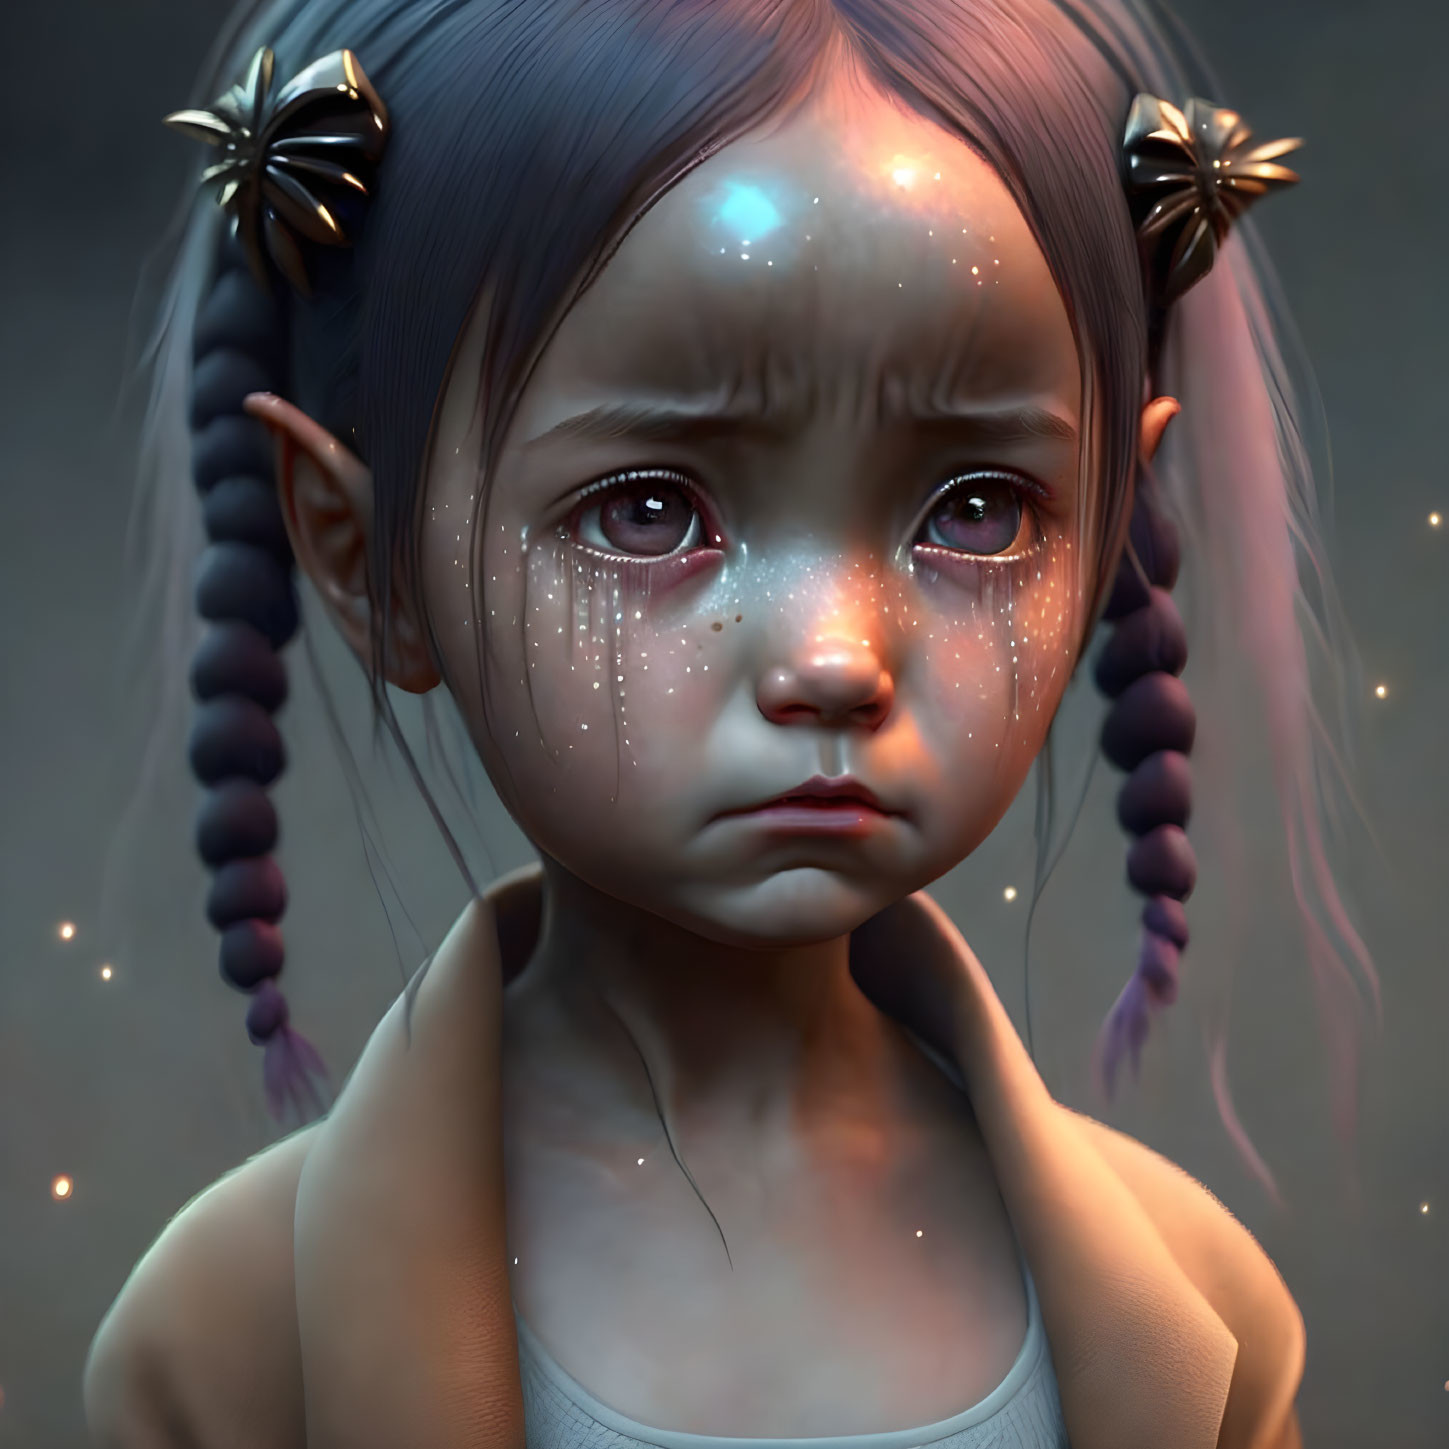 Sad little alien girl